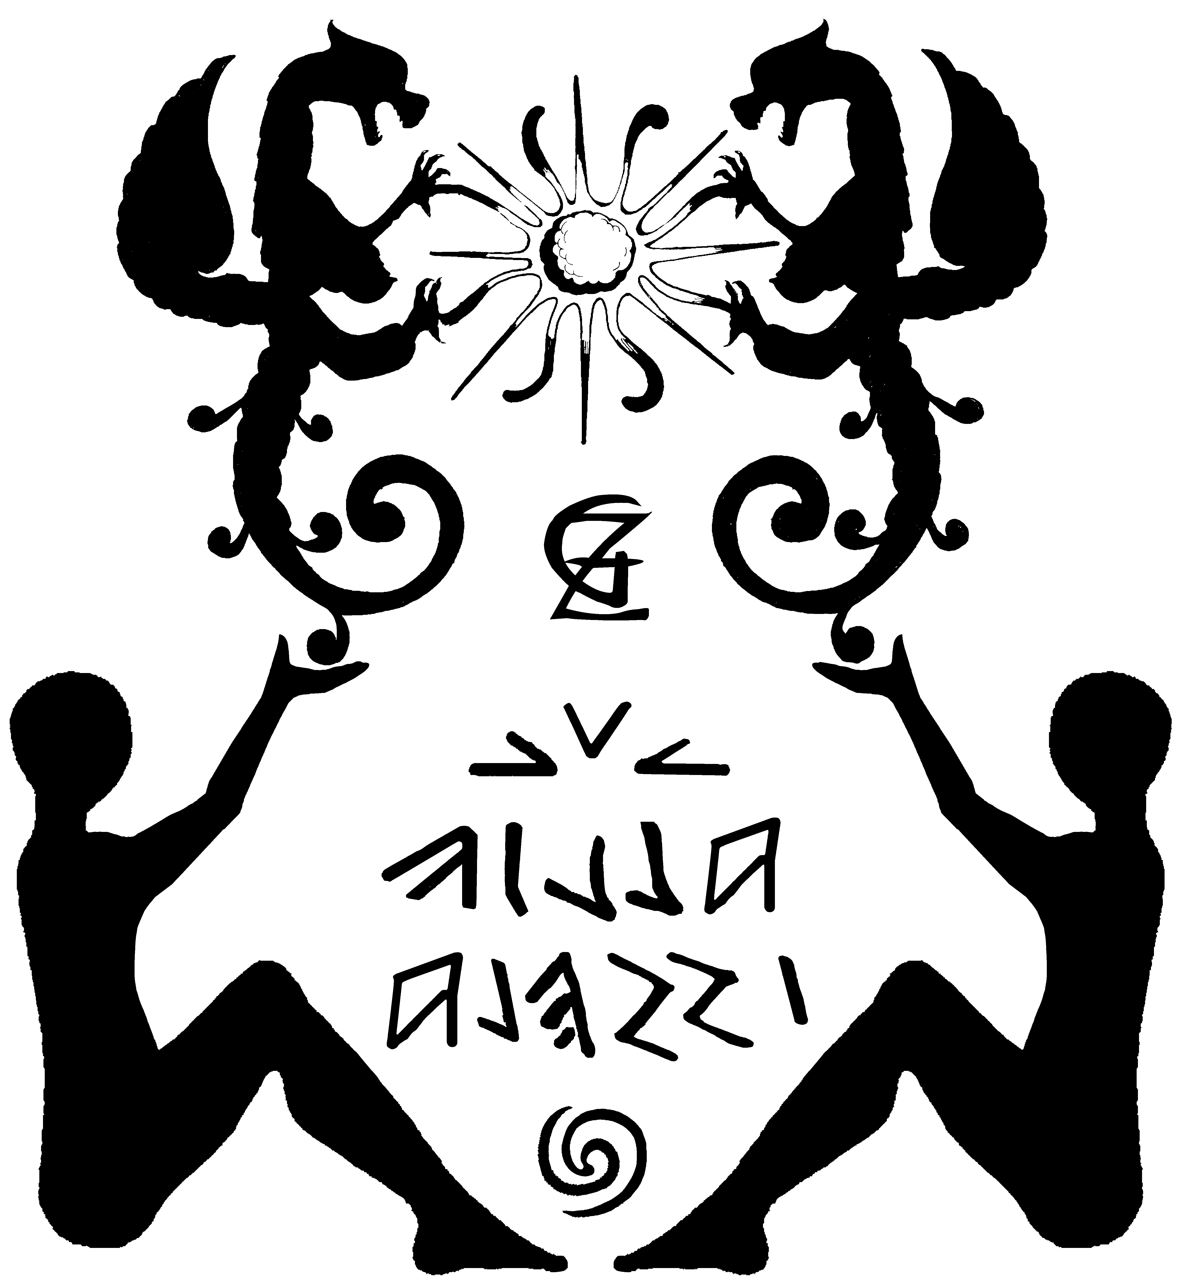 Villa Alessi logo